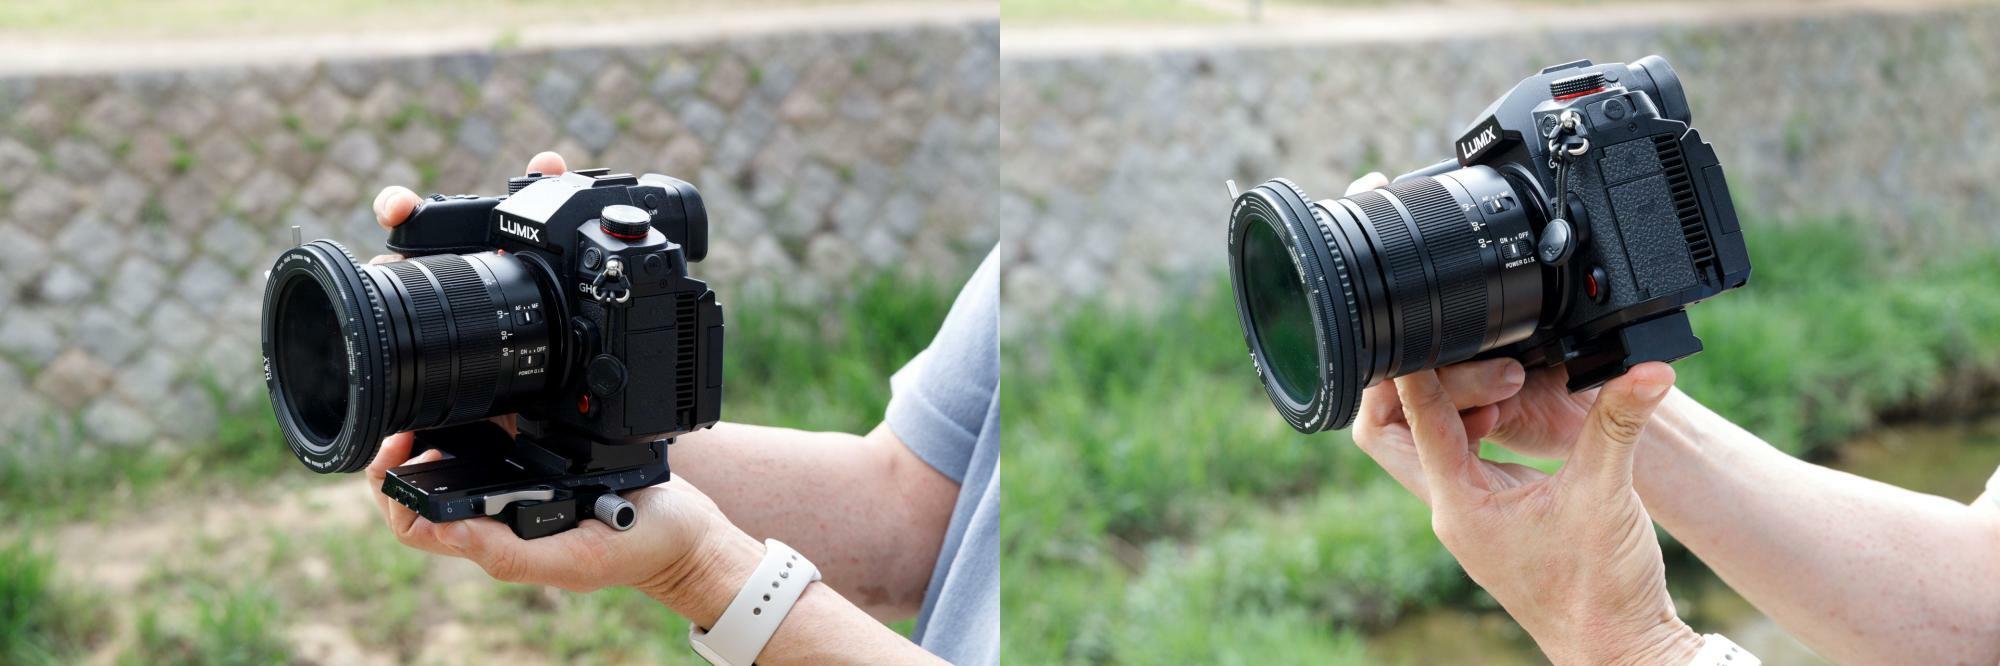 ジンバルからプレートごとカメラを外せばすぐに手持ち撮影に移行できる。ジンバル撮影に戻るのも簡単で便利。